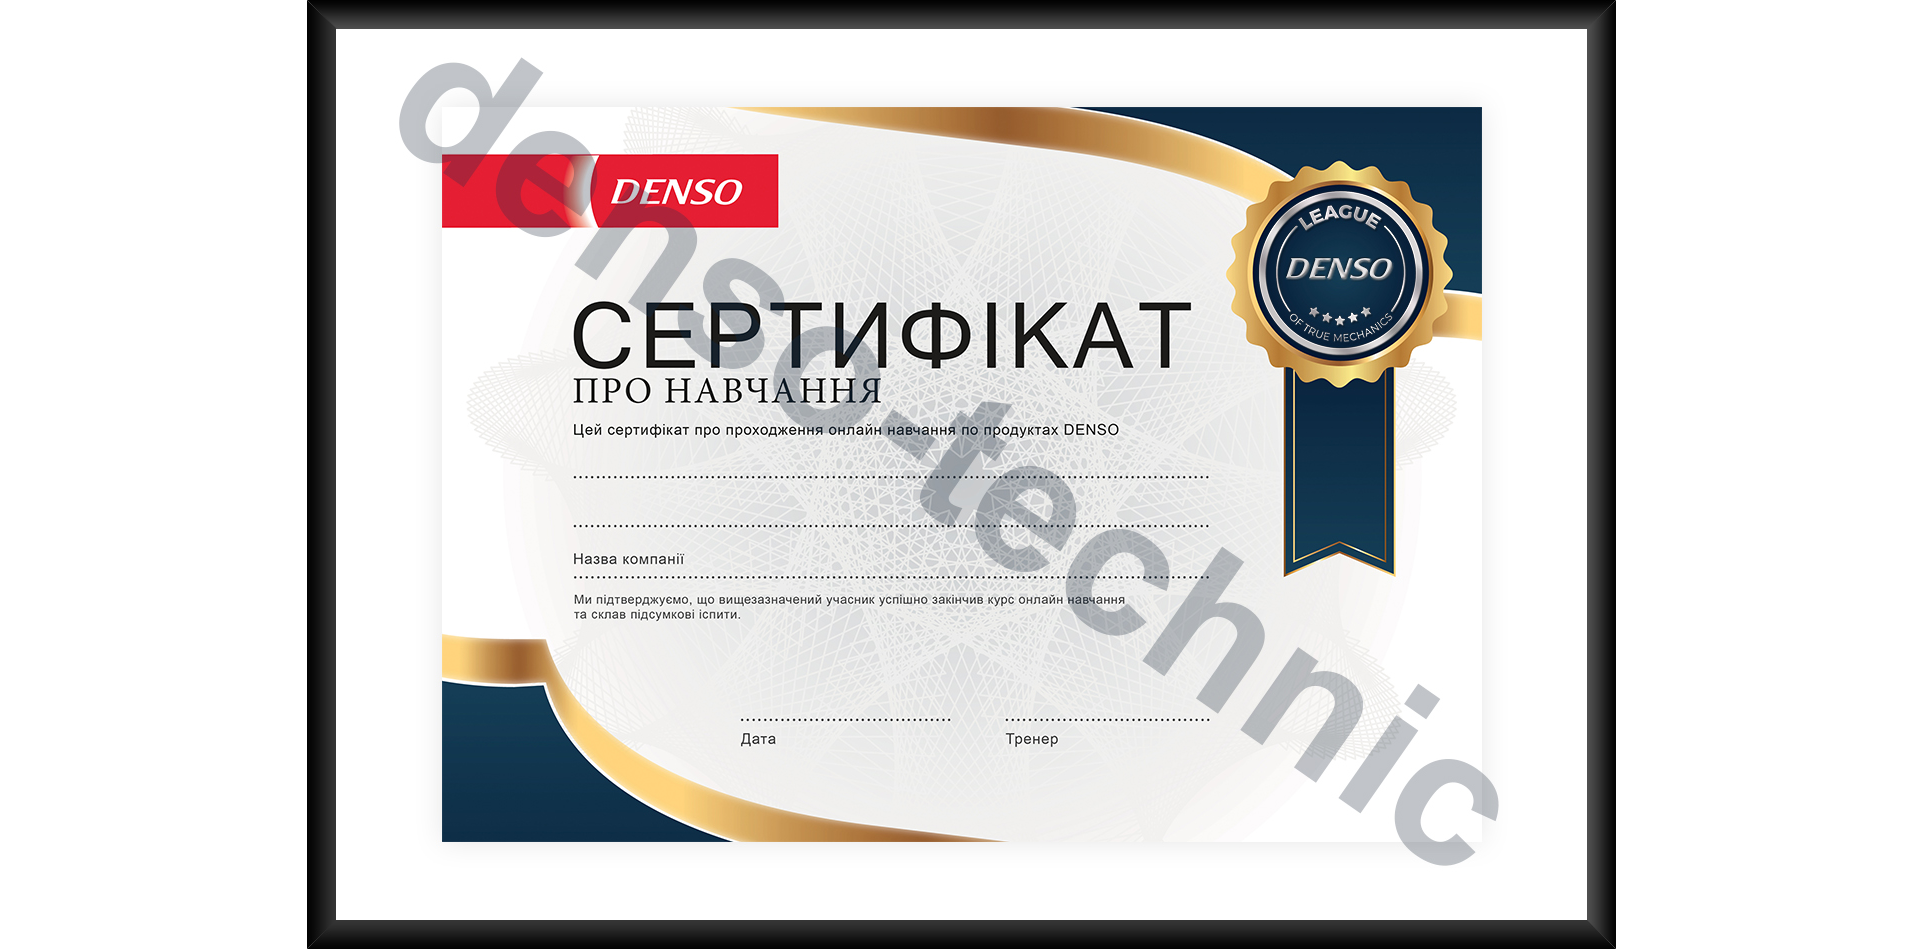 DENSO - Сертифікат